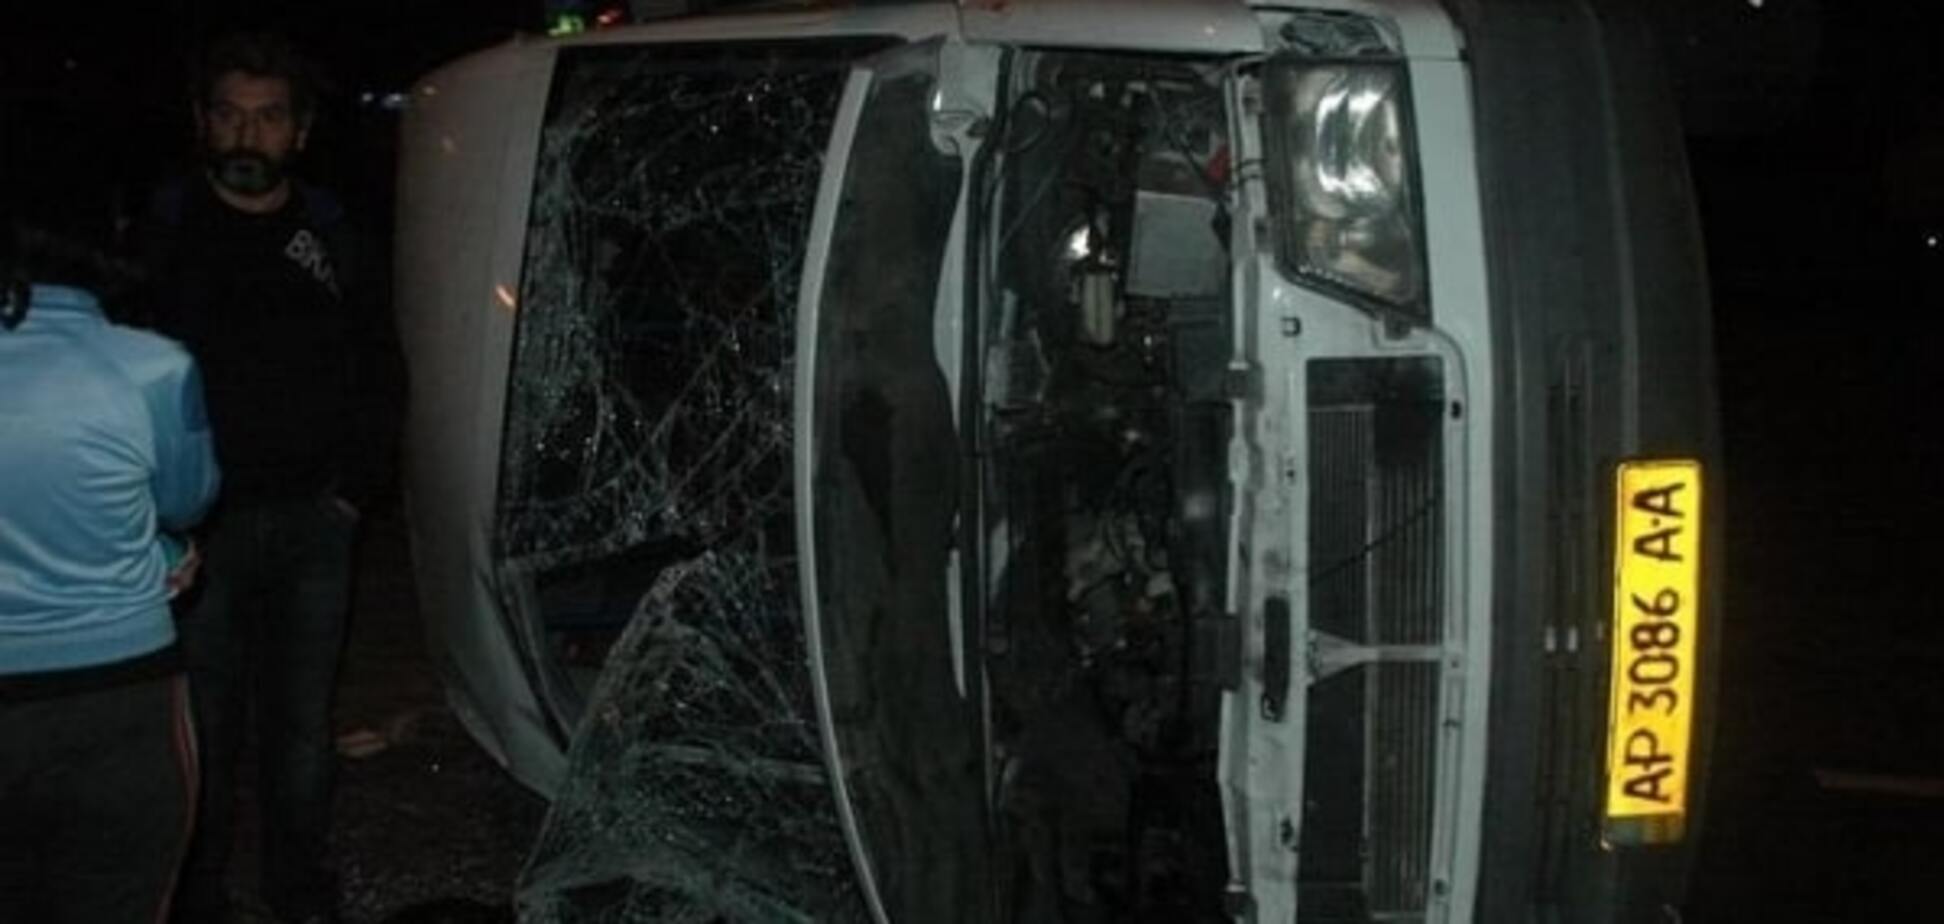 Toyota протаранила маршрутку в Запорожье: фото с места аварии